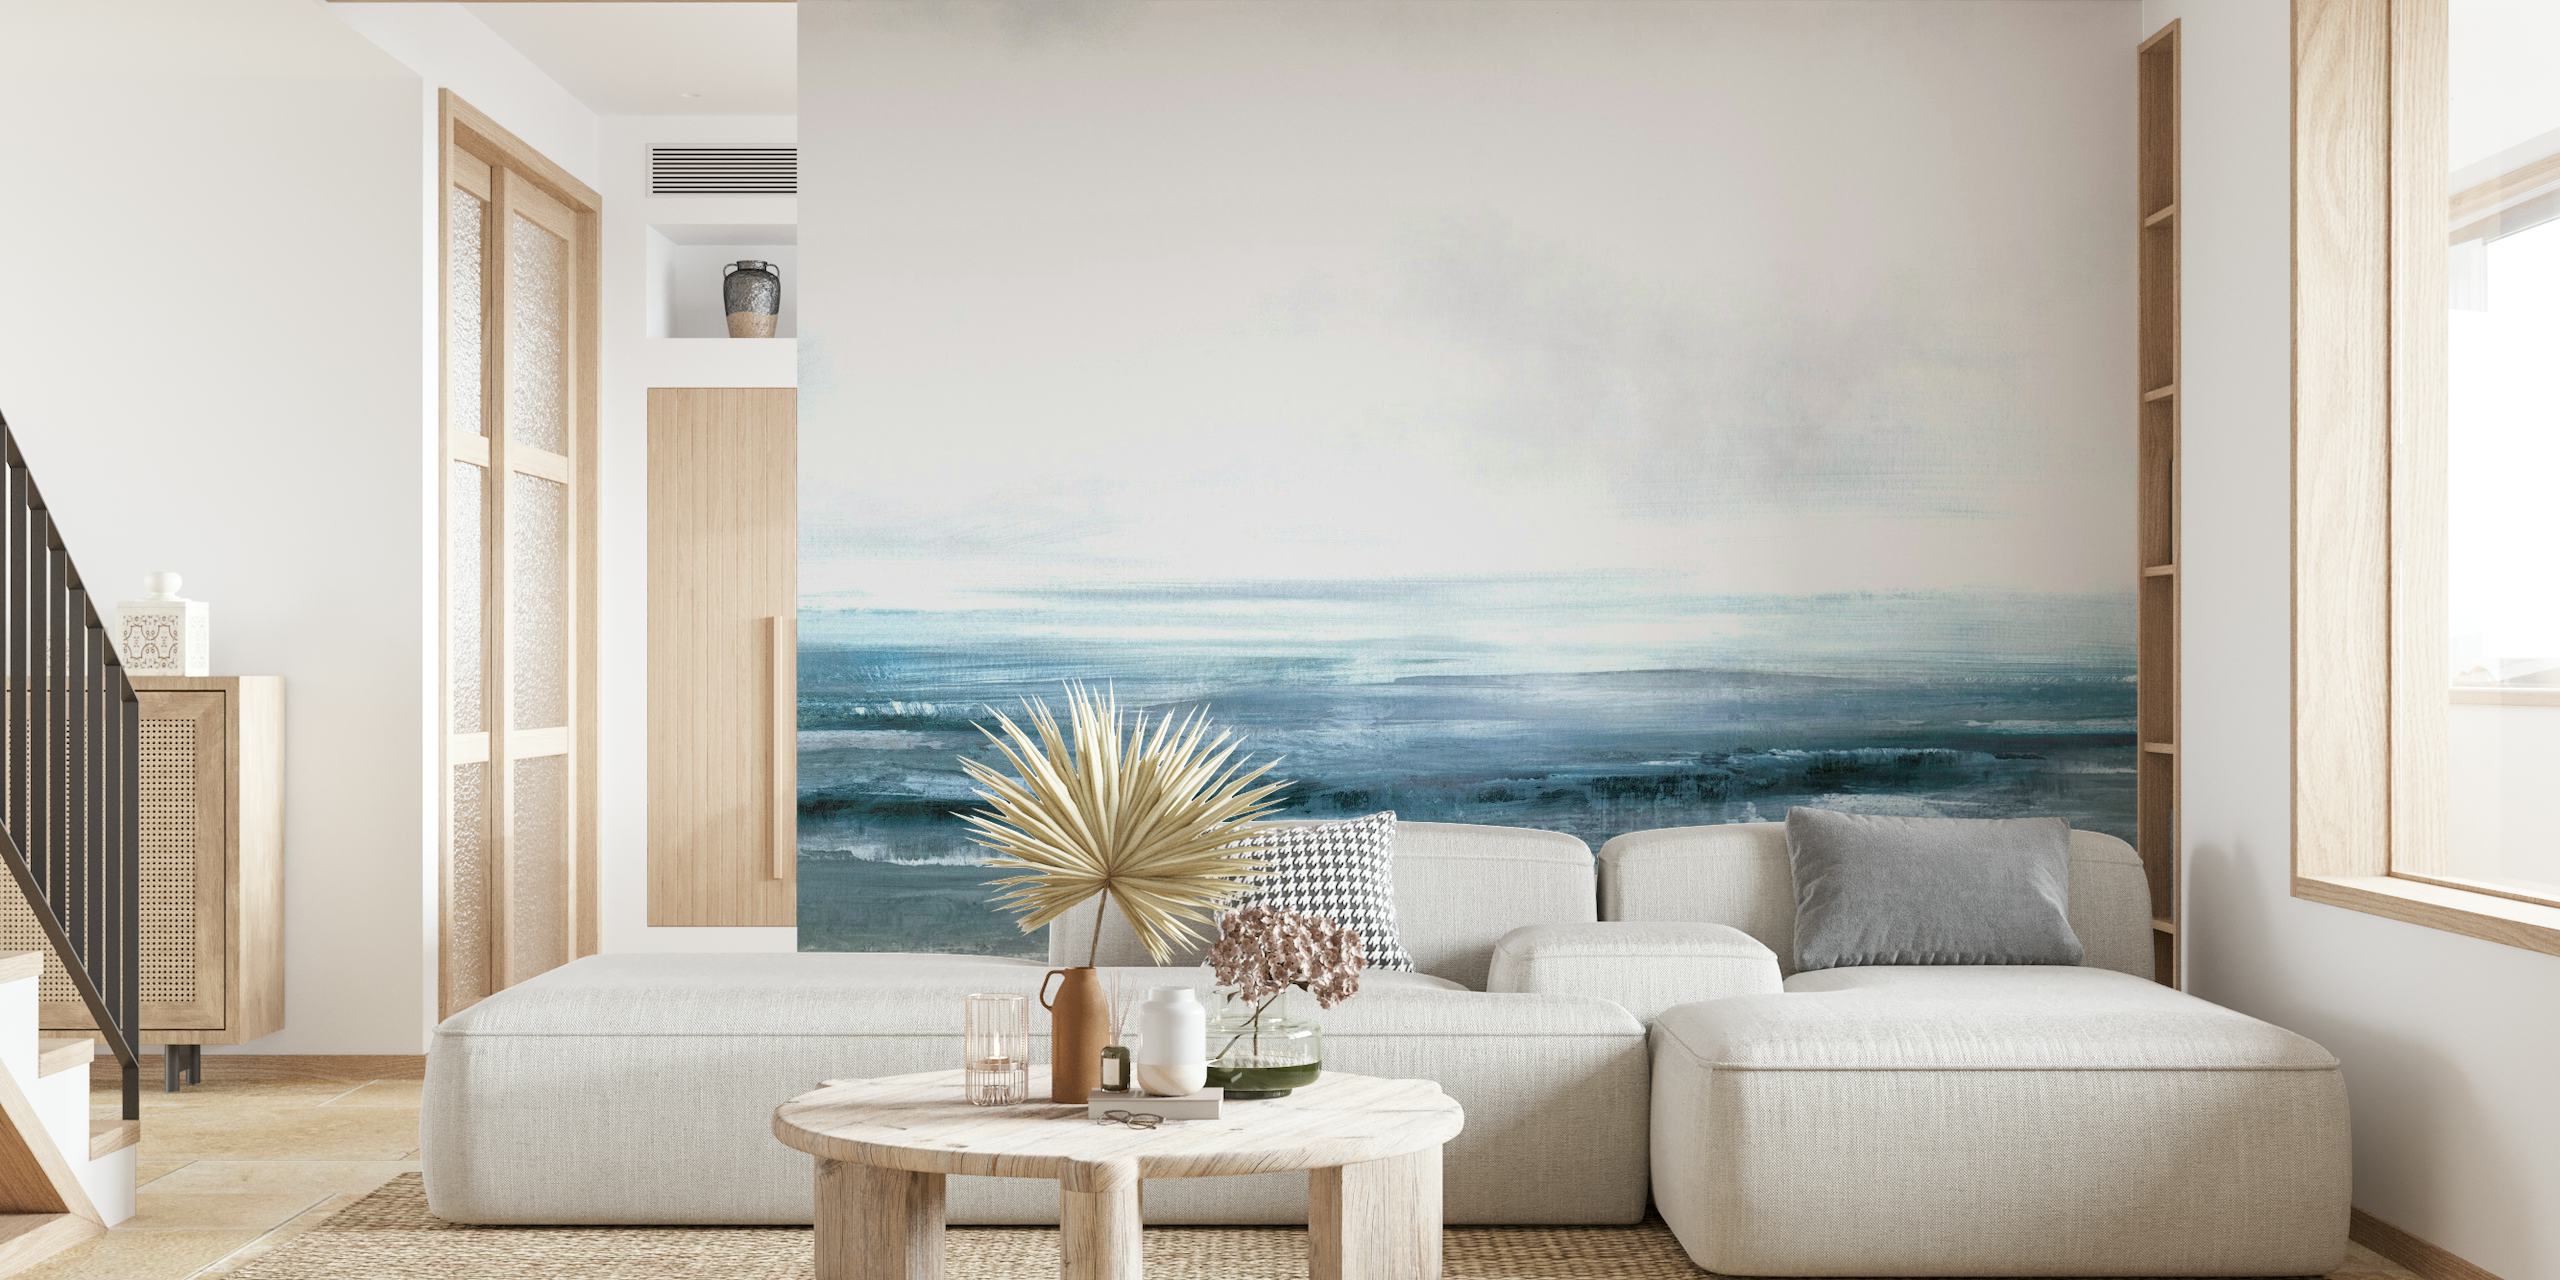 fotomural vinílico de parede tranquilo horizonte oceânico com tons de azul e cinza